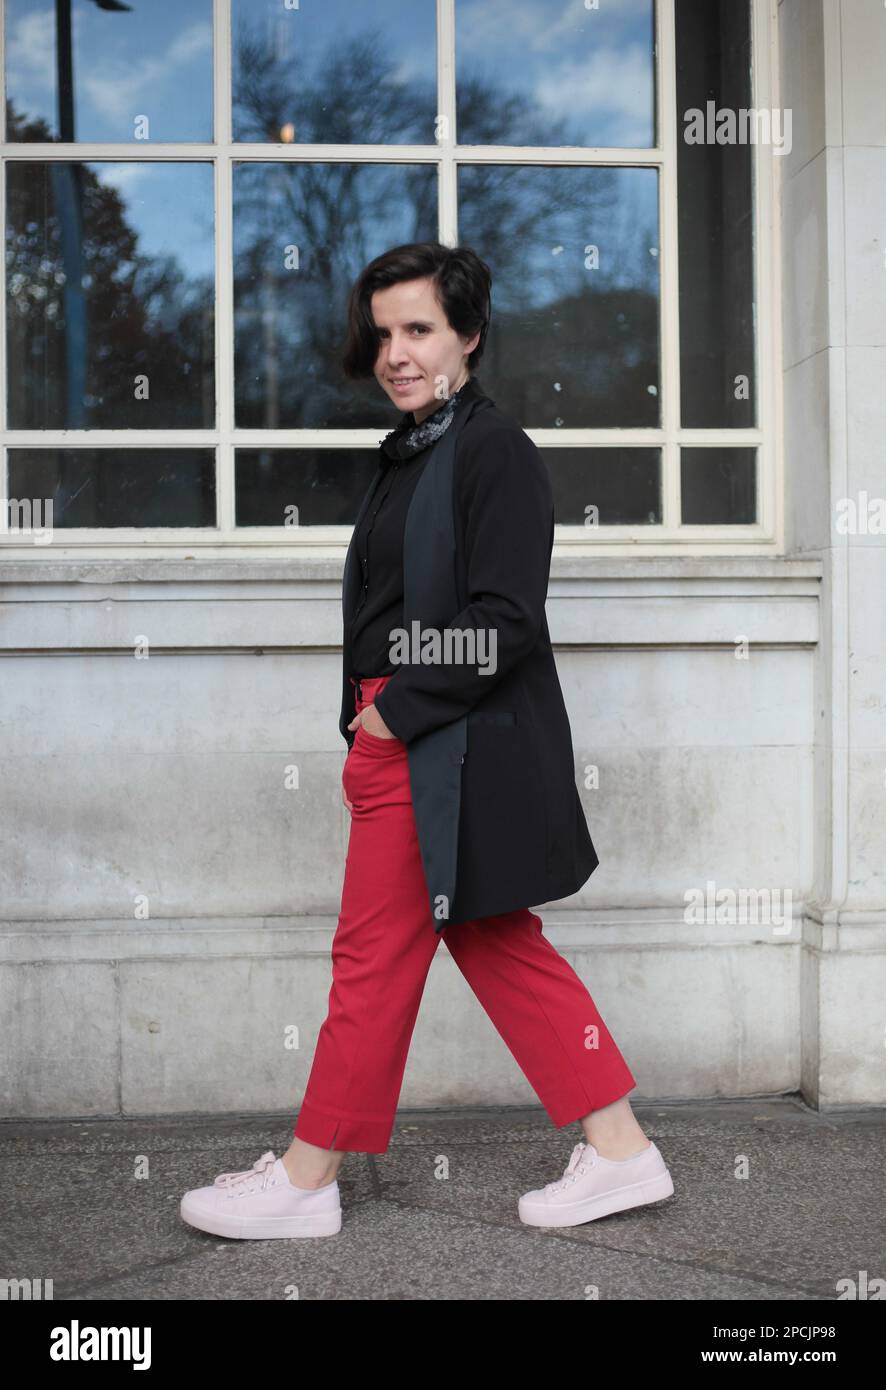 Red Stylish Women's Pants